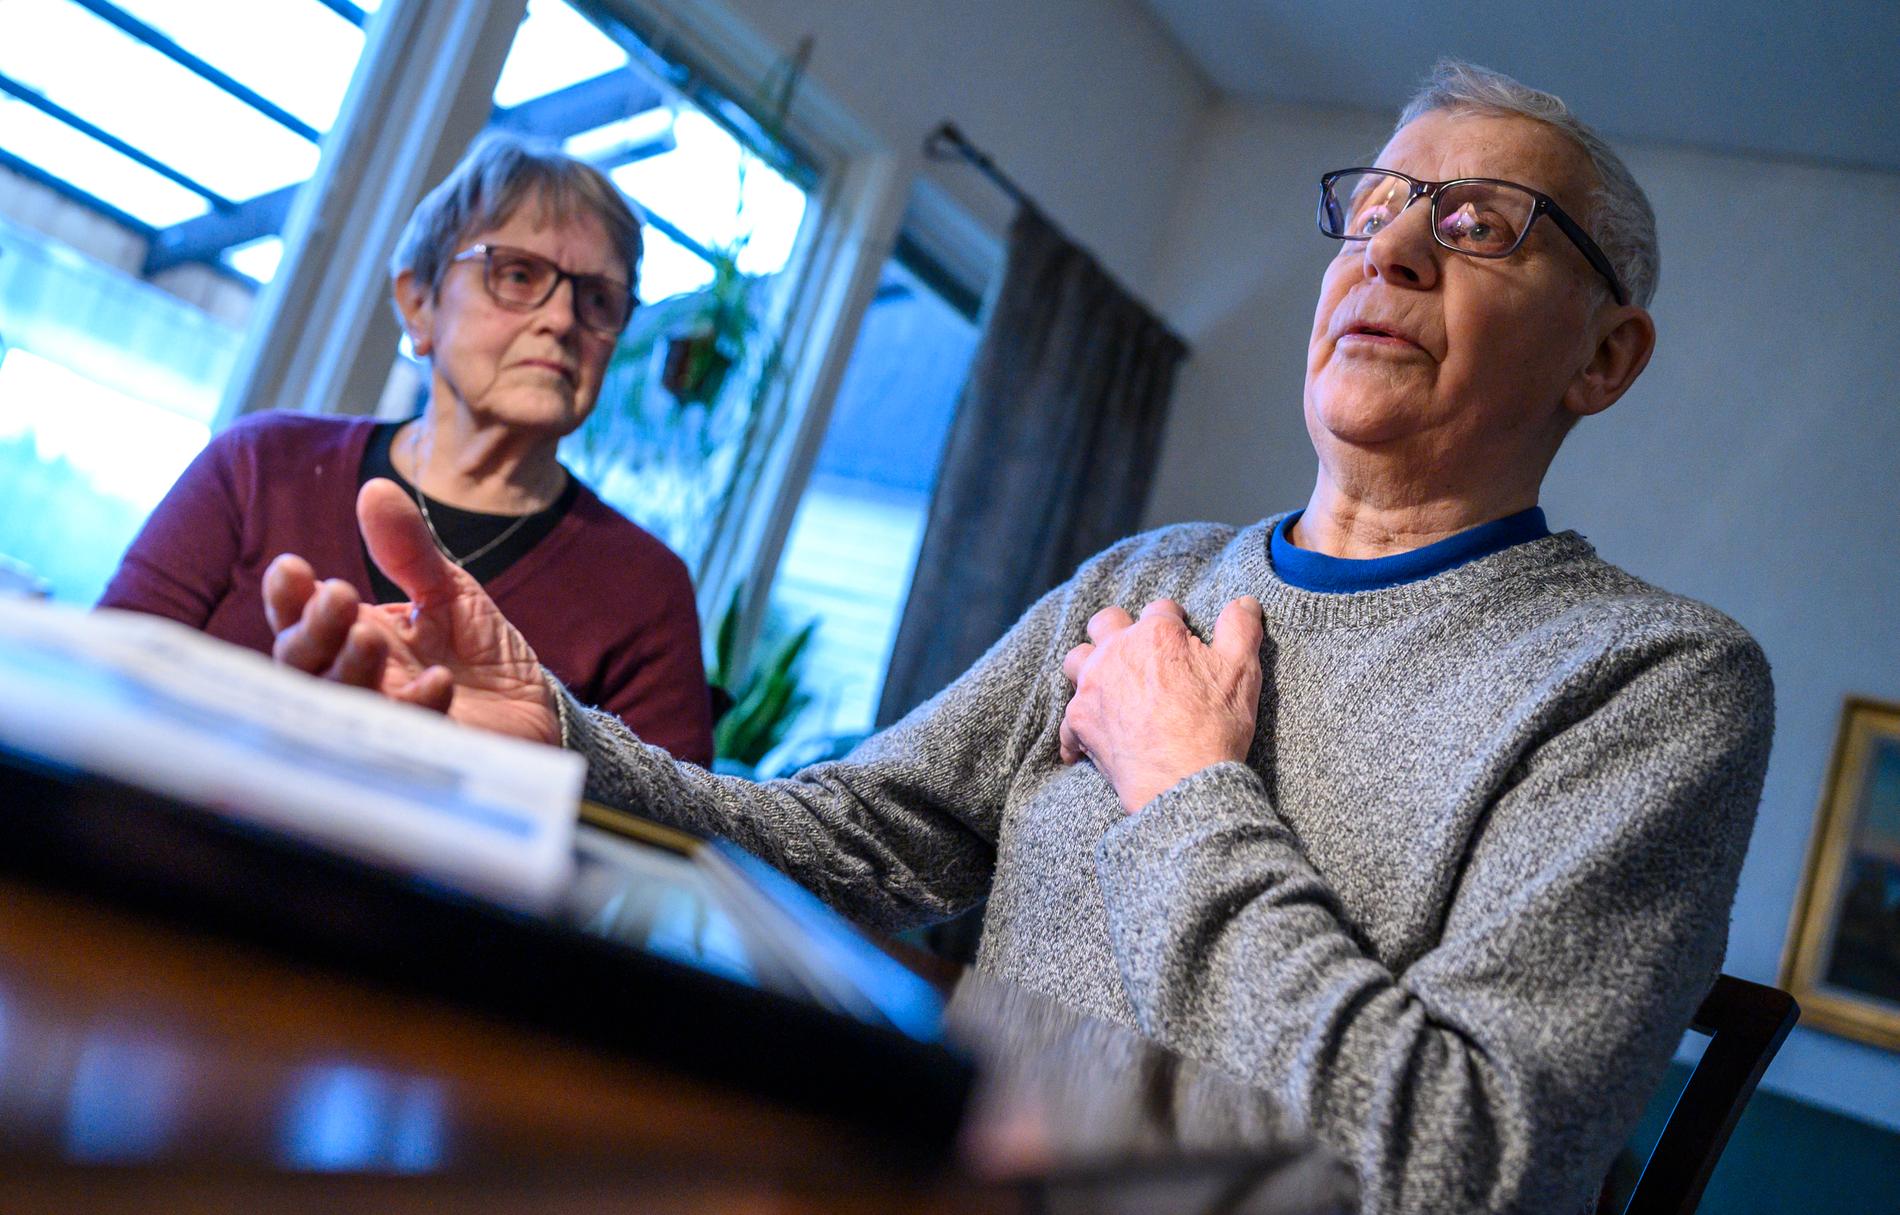 "Vi är oroliga för Kostas framtid. Undan för undan tar de bort det ena efter det andra. Då måste vi reagera", säger pensionerade glasbruksarbetaren Sven-Olof Karlsson, 87, här med hustrun Eivor.